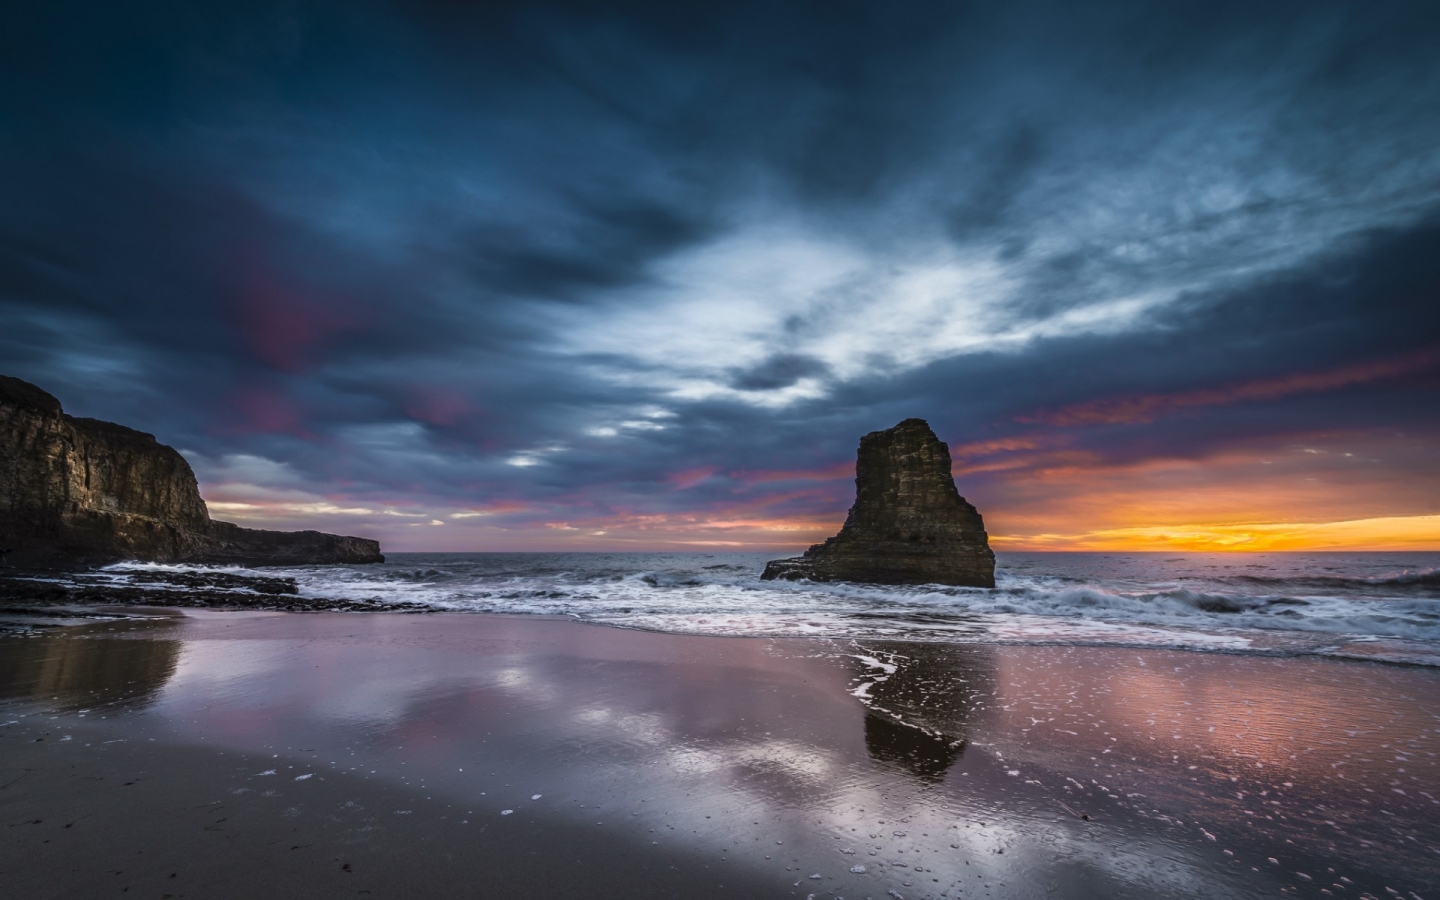 Cloudy Ocean Sunset for 1440 x 900 widescreen resolution